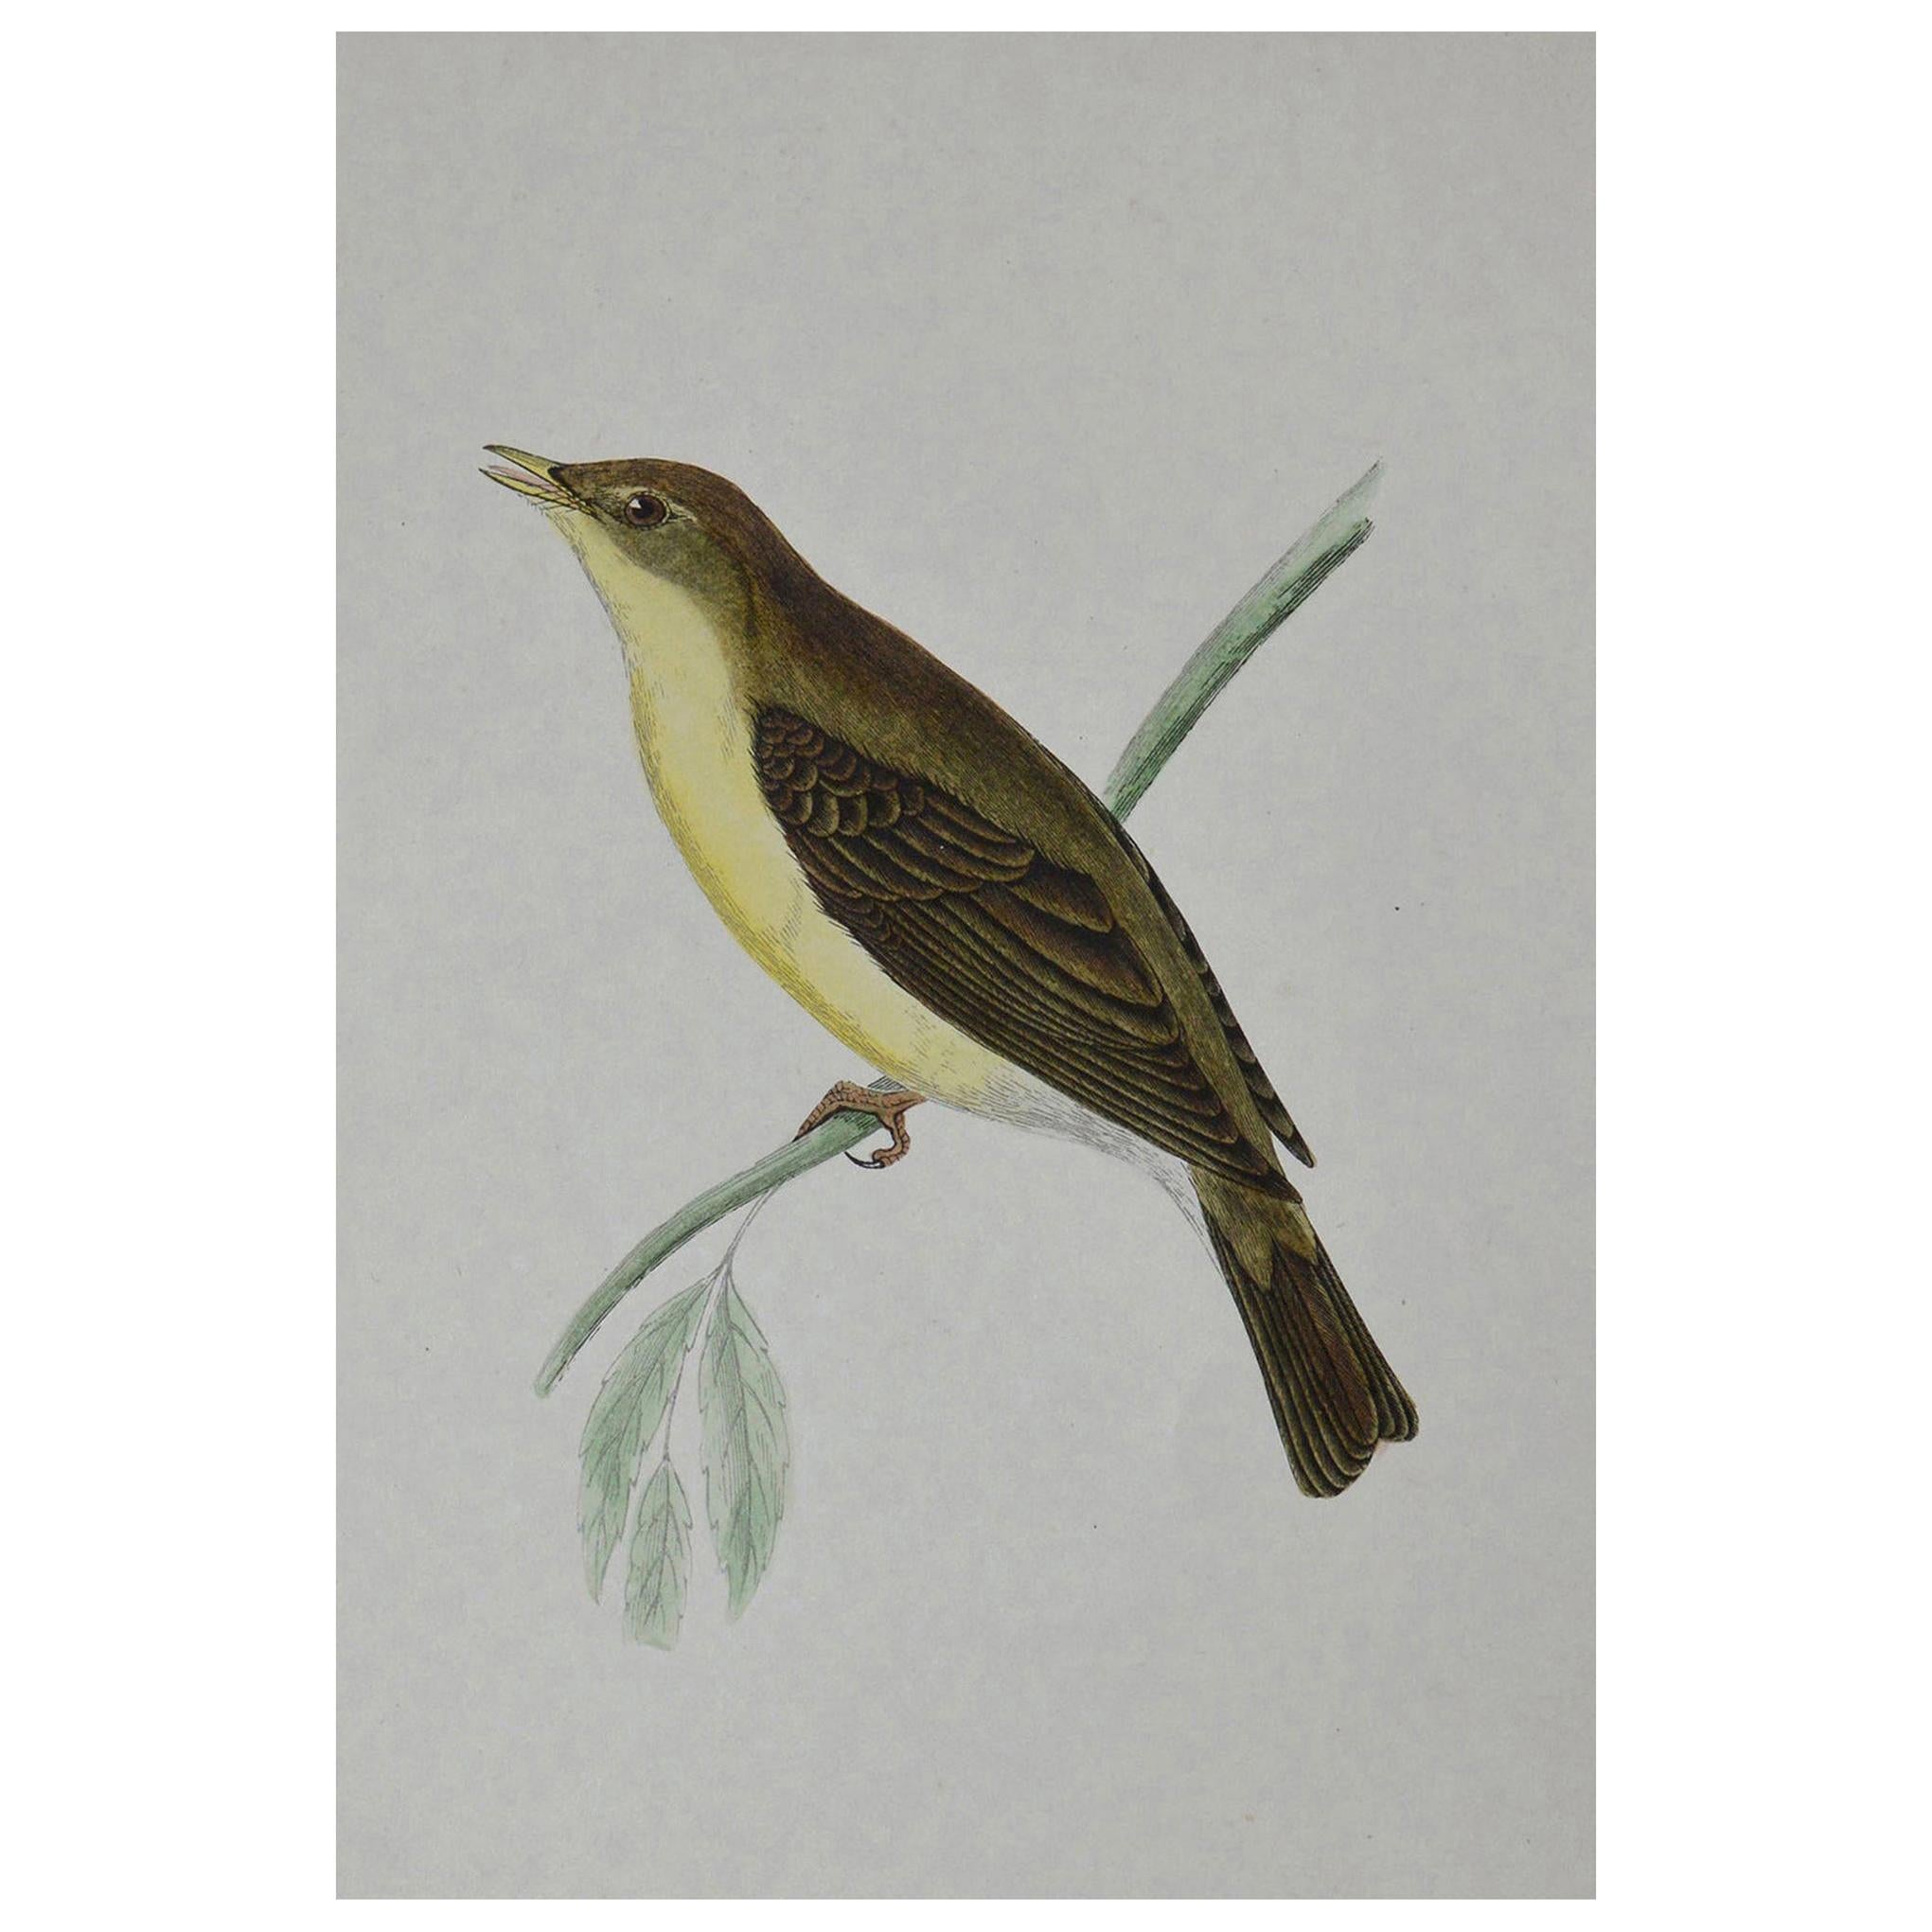 Original Antique Bird Print, the Willow Warbler, circa 1850